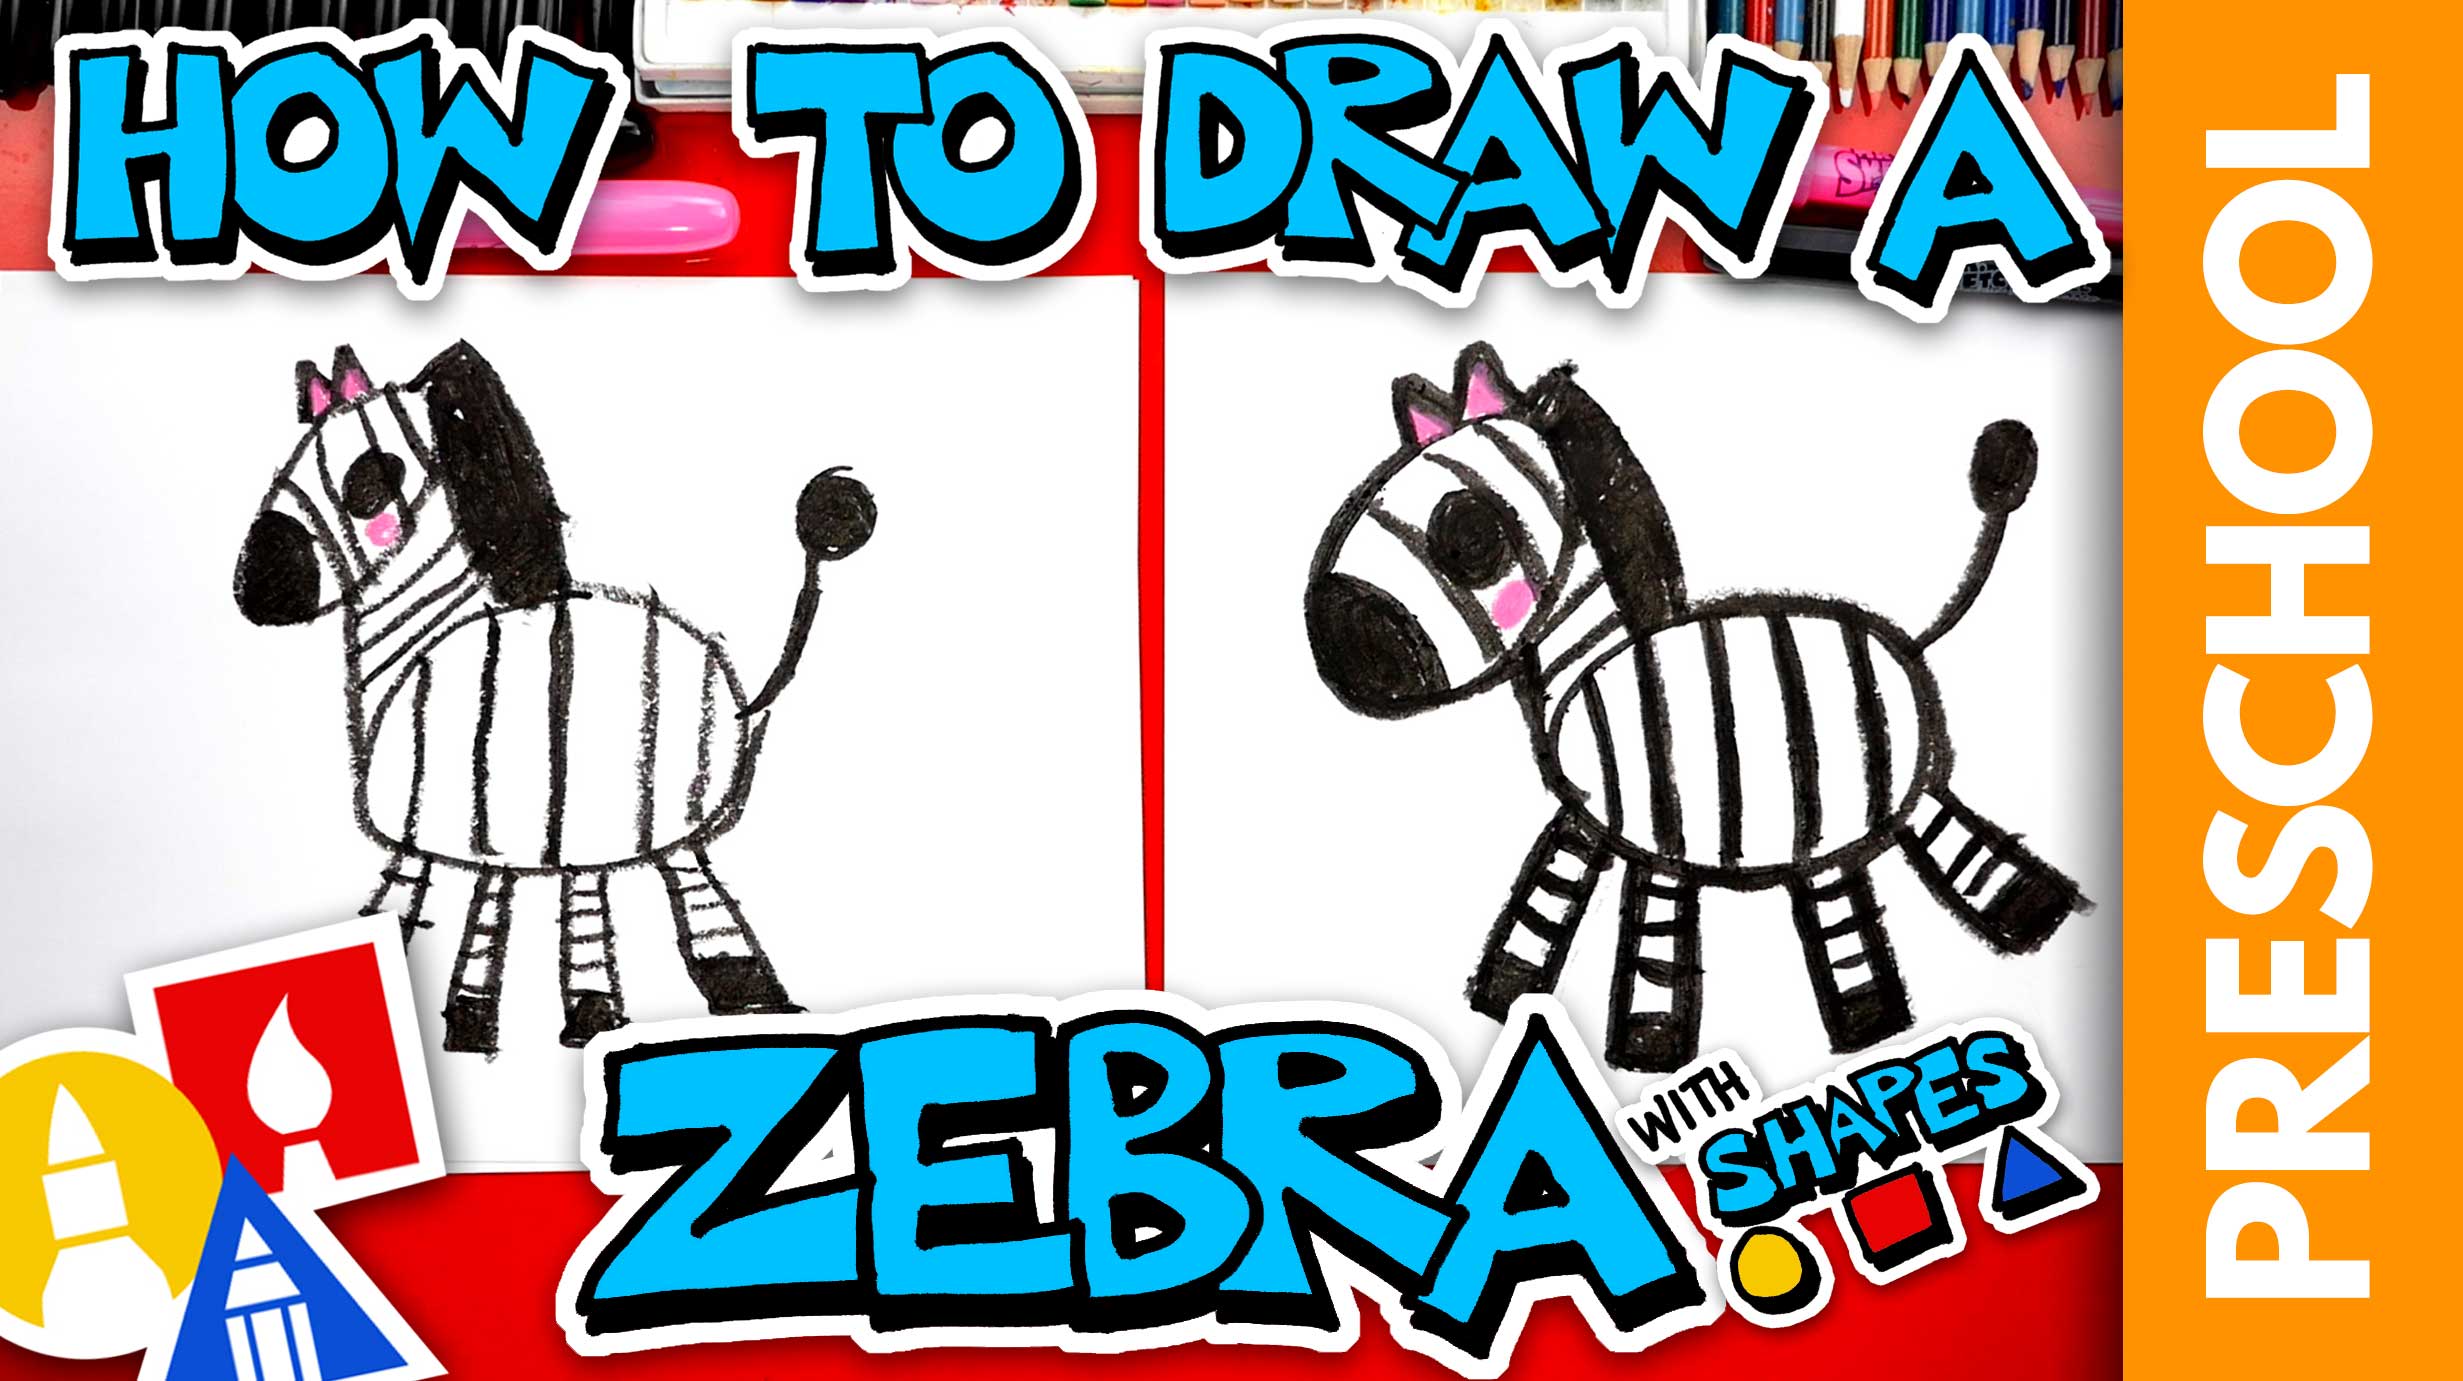 How To Draw A Zebra Step By Step